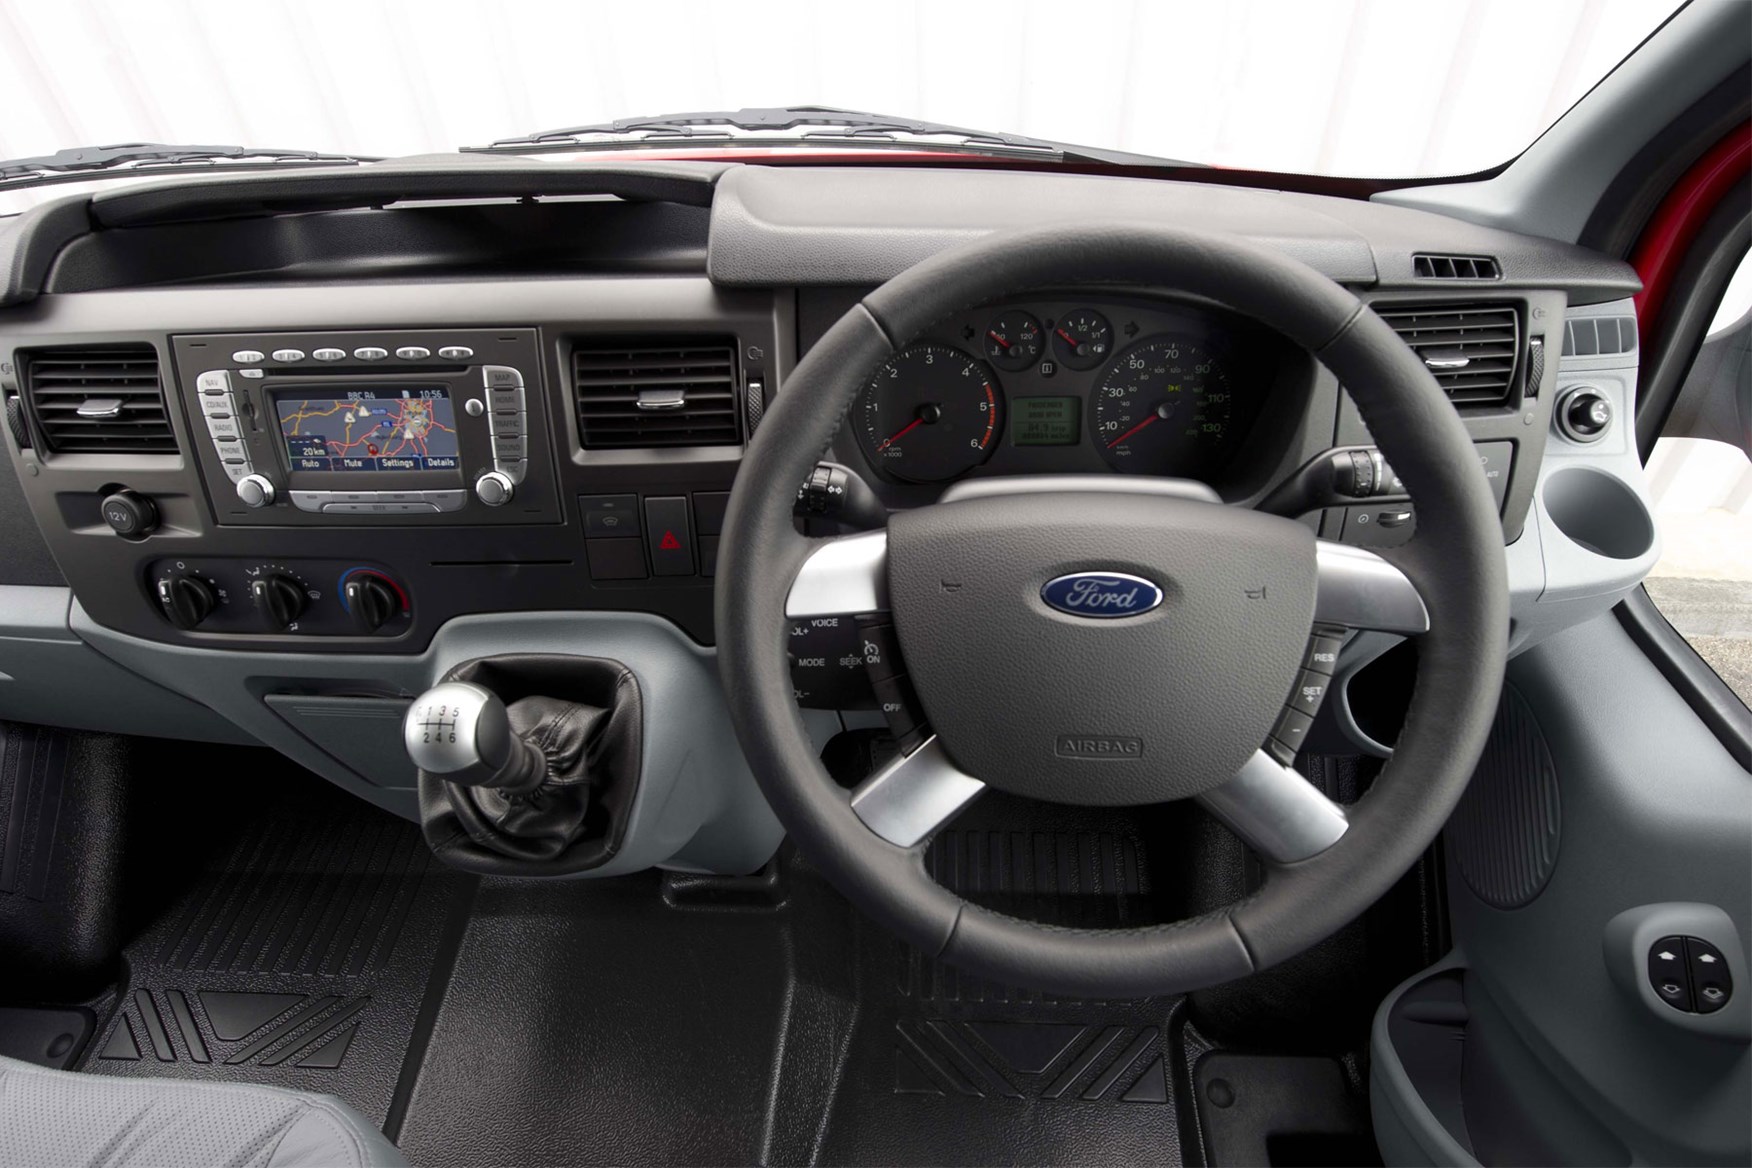 Ford Transit (2006-2014) cab interior